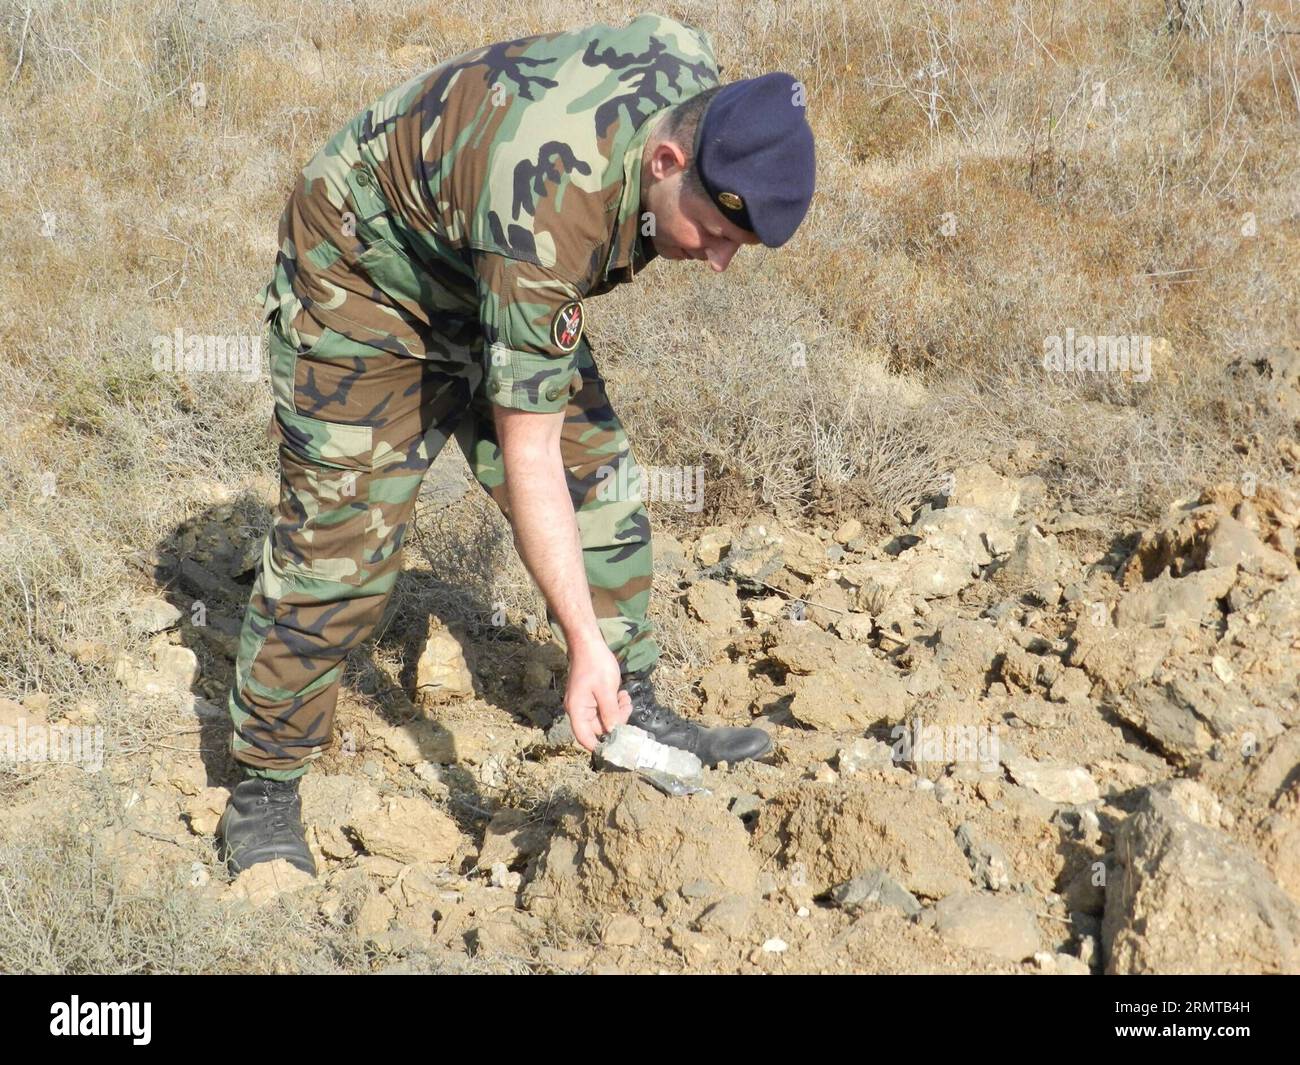 (140826) -- BEIRUT, 26 agosto 2014 -- Un soldato libanese controlla un frammento di conchiglie dopo uno sciopero israeliano, nella valle del fiume Litani, a 10 chilometri dai confini con Israele, 26 agosto 2014. Gli assalitori sconosciuti hanno sparato lunedì sera almeno un razzo dal sud del Libano verso i territori occupati nel nord di Israele. Per rappresaglia, l'artiglieria israeliana sparò diversi proiettili sull'area dove i razzi avevano origine. LIBANO-ISRAELE-RAZZO-ATTACK Taher PUBLICATIONxNOTxINxCHN Beirut agosto 26 2014 un soldato libanese dell'esercito controlla un frammento di Shell dopo lo sciopero israeliano alla Litani R. Foto Stock